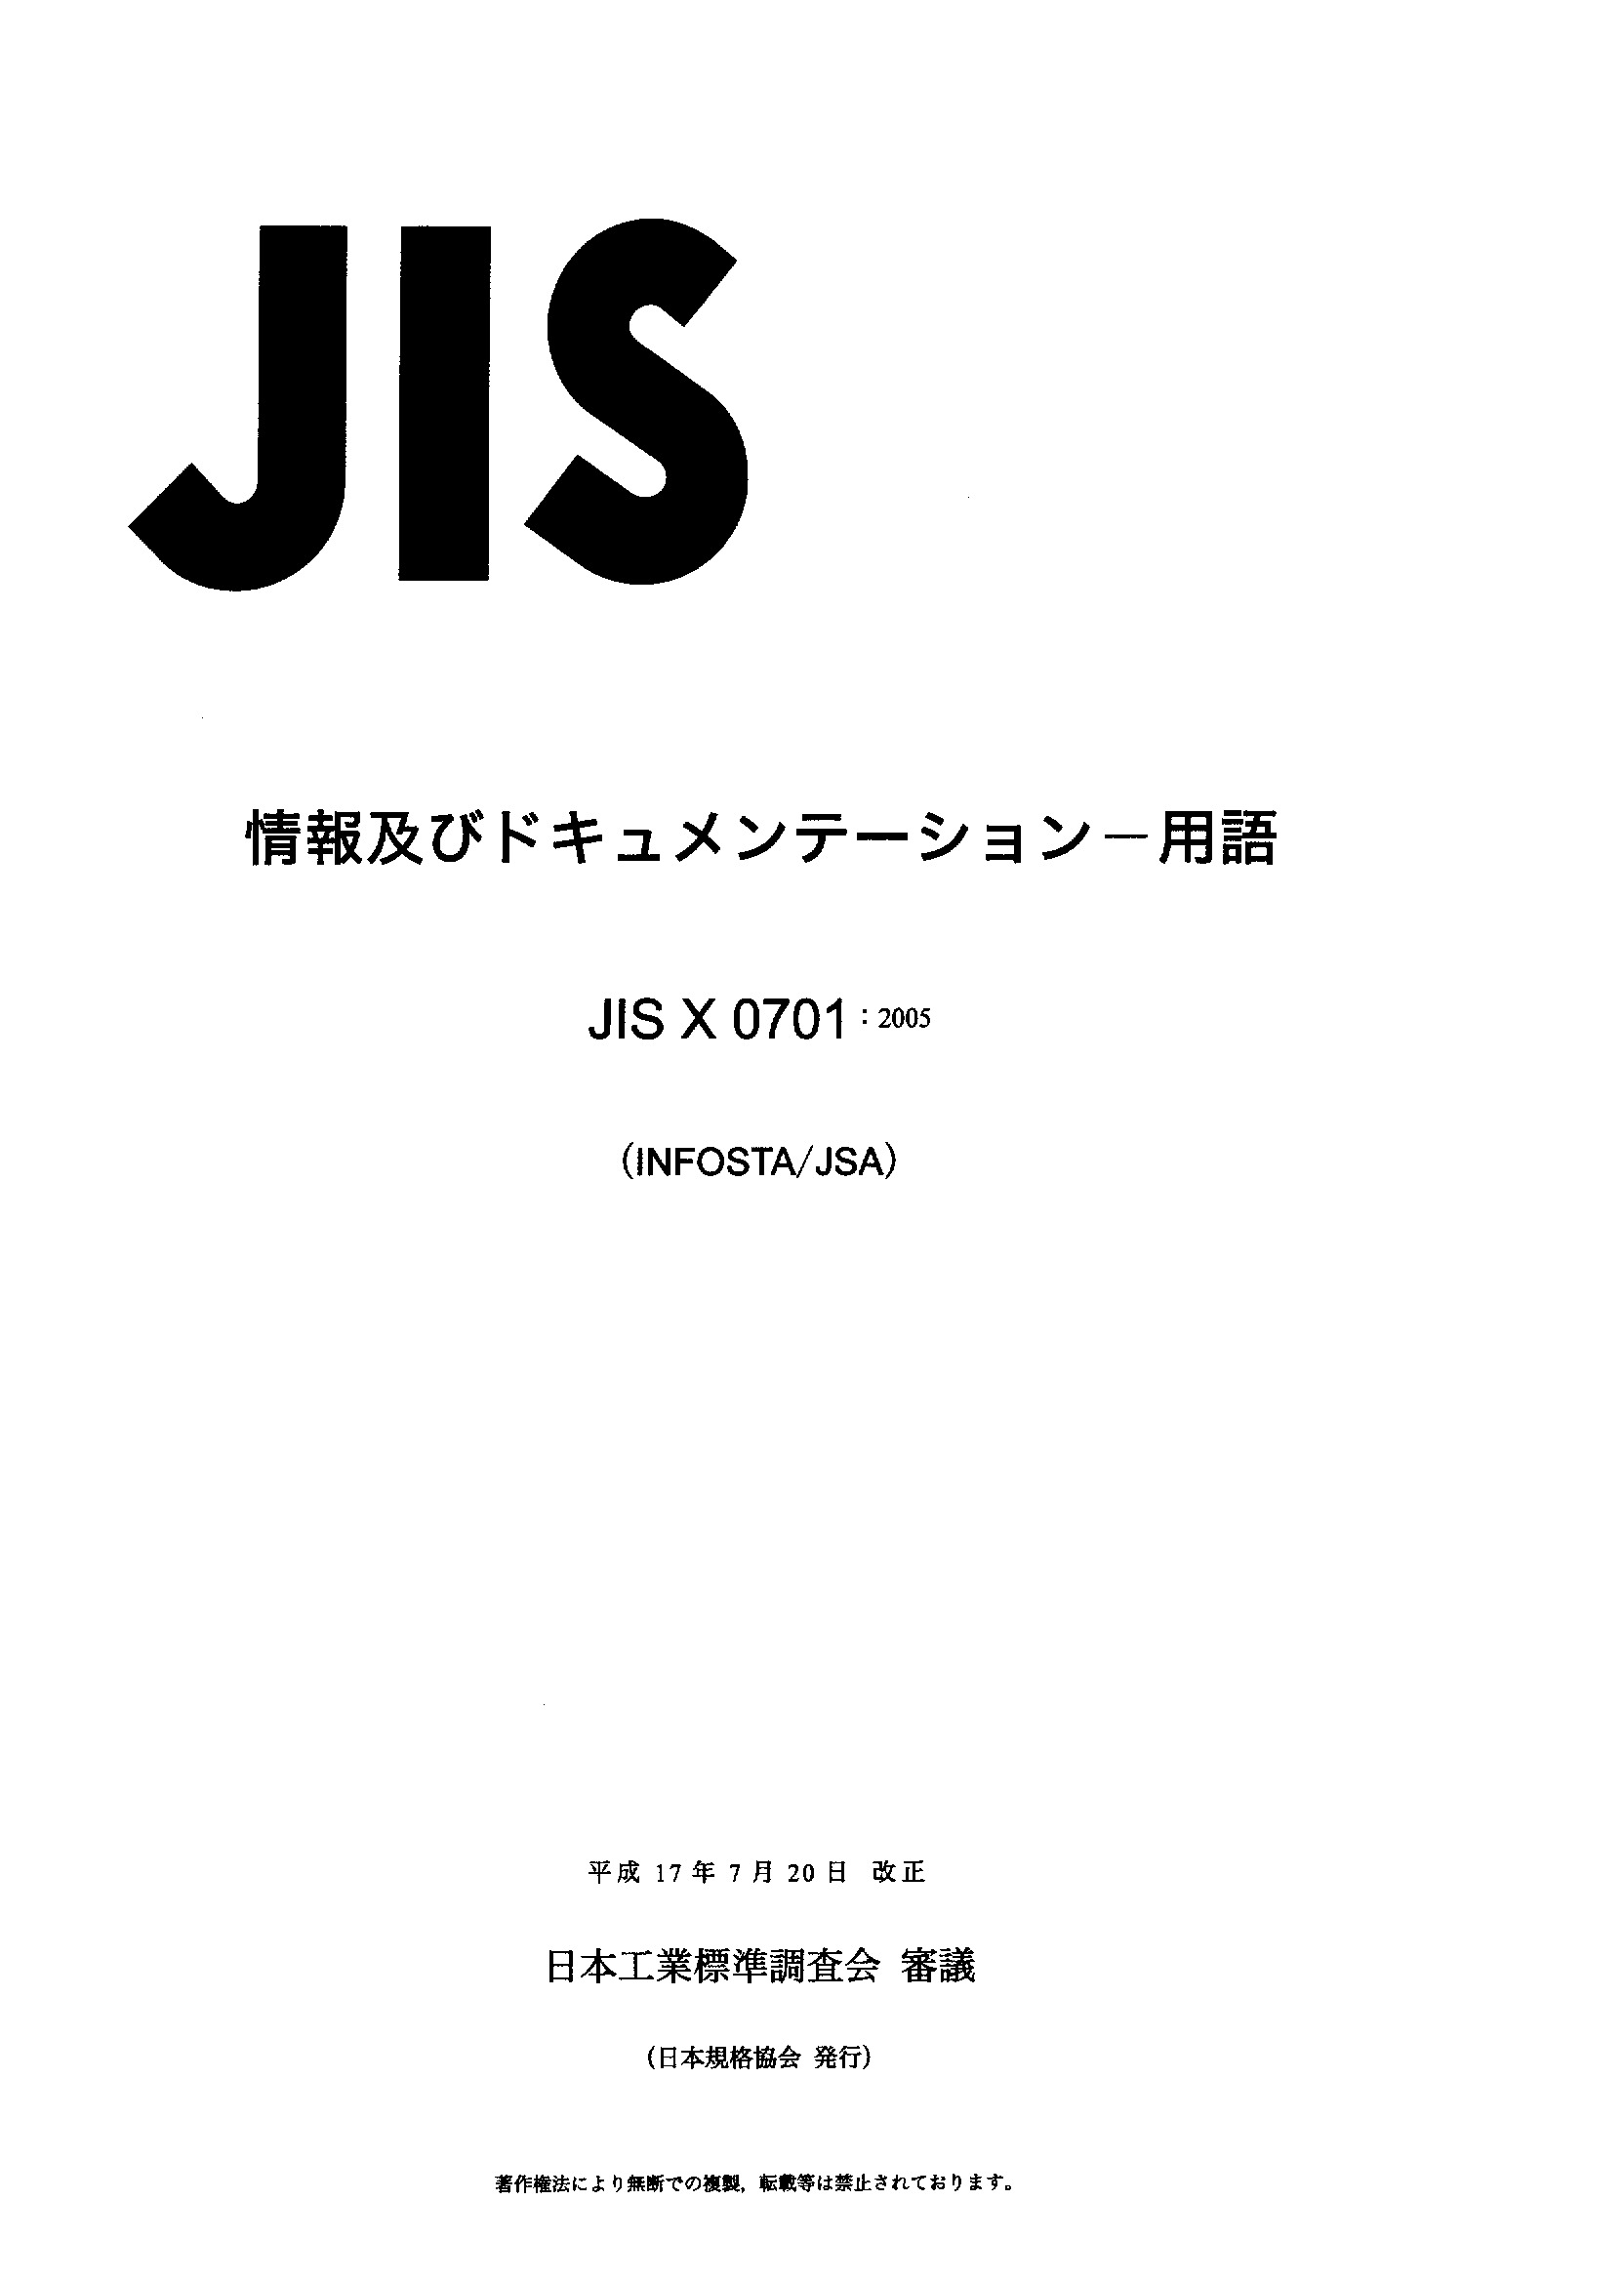 JIS X 0701:2005封面图